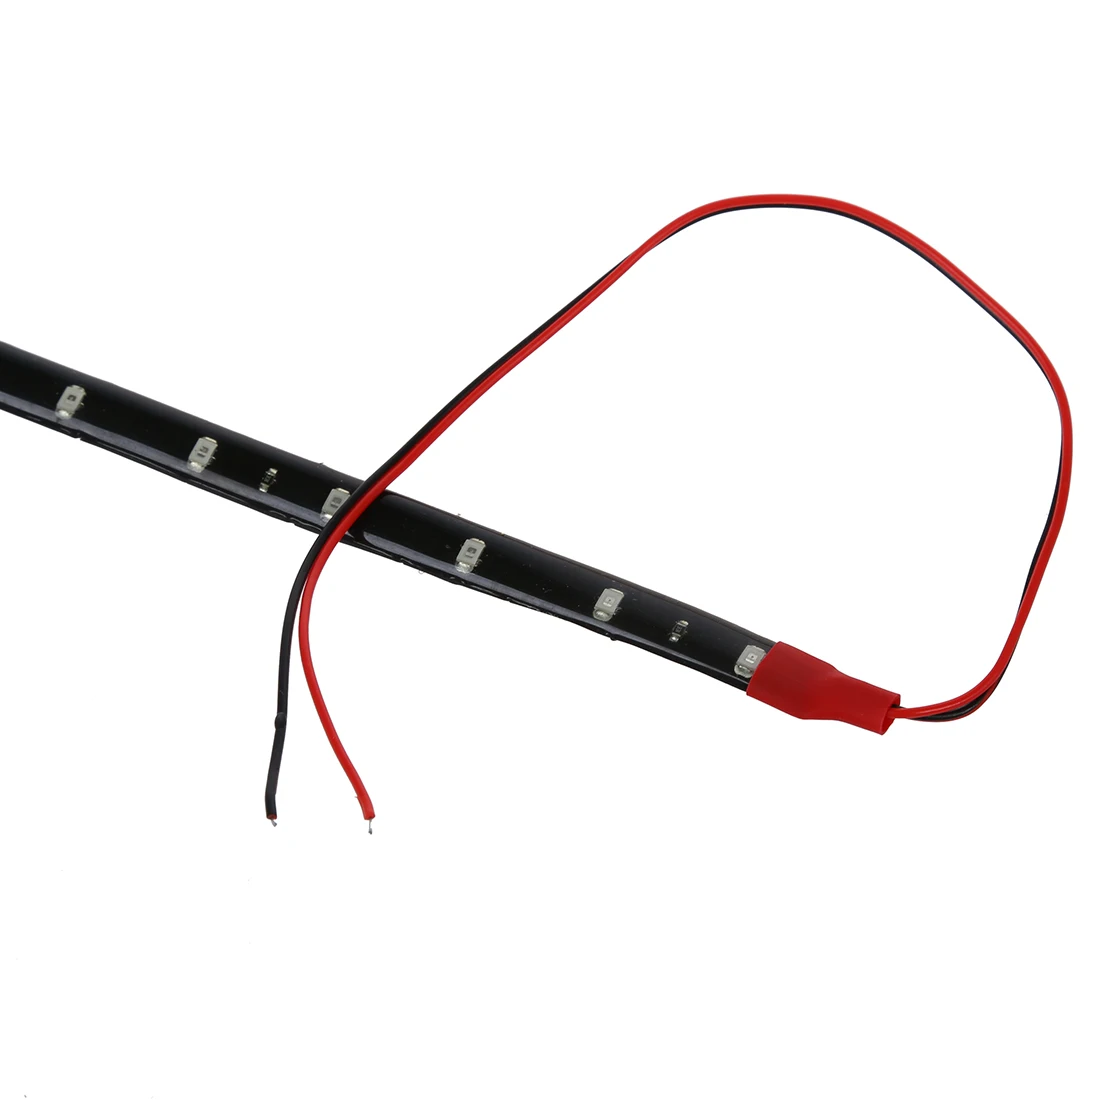 2 x гирлянды 15 светодиодный ленты 30 см кабулк красный цвет, гирлянда 12В